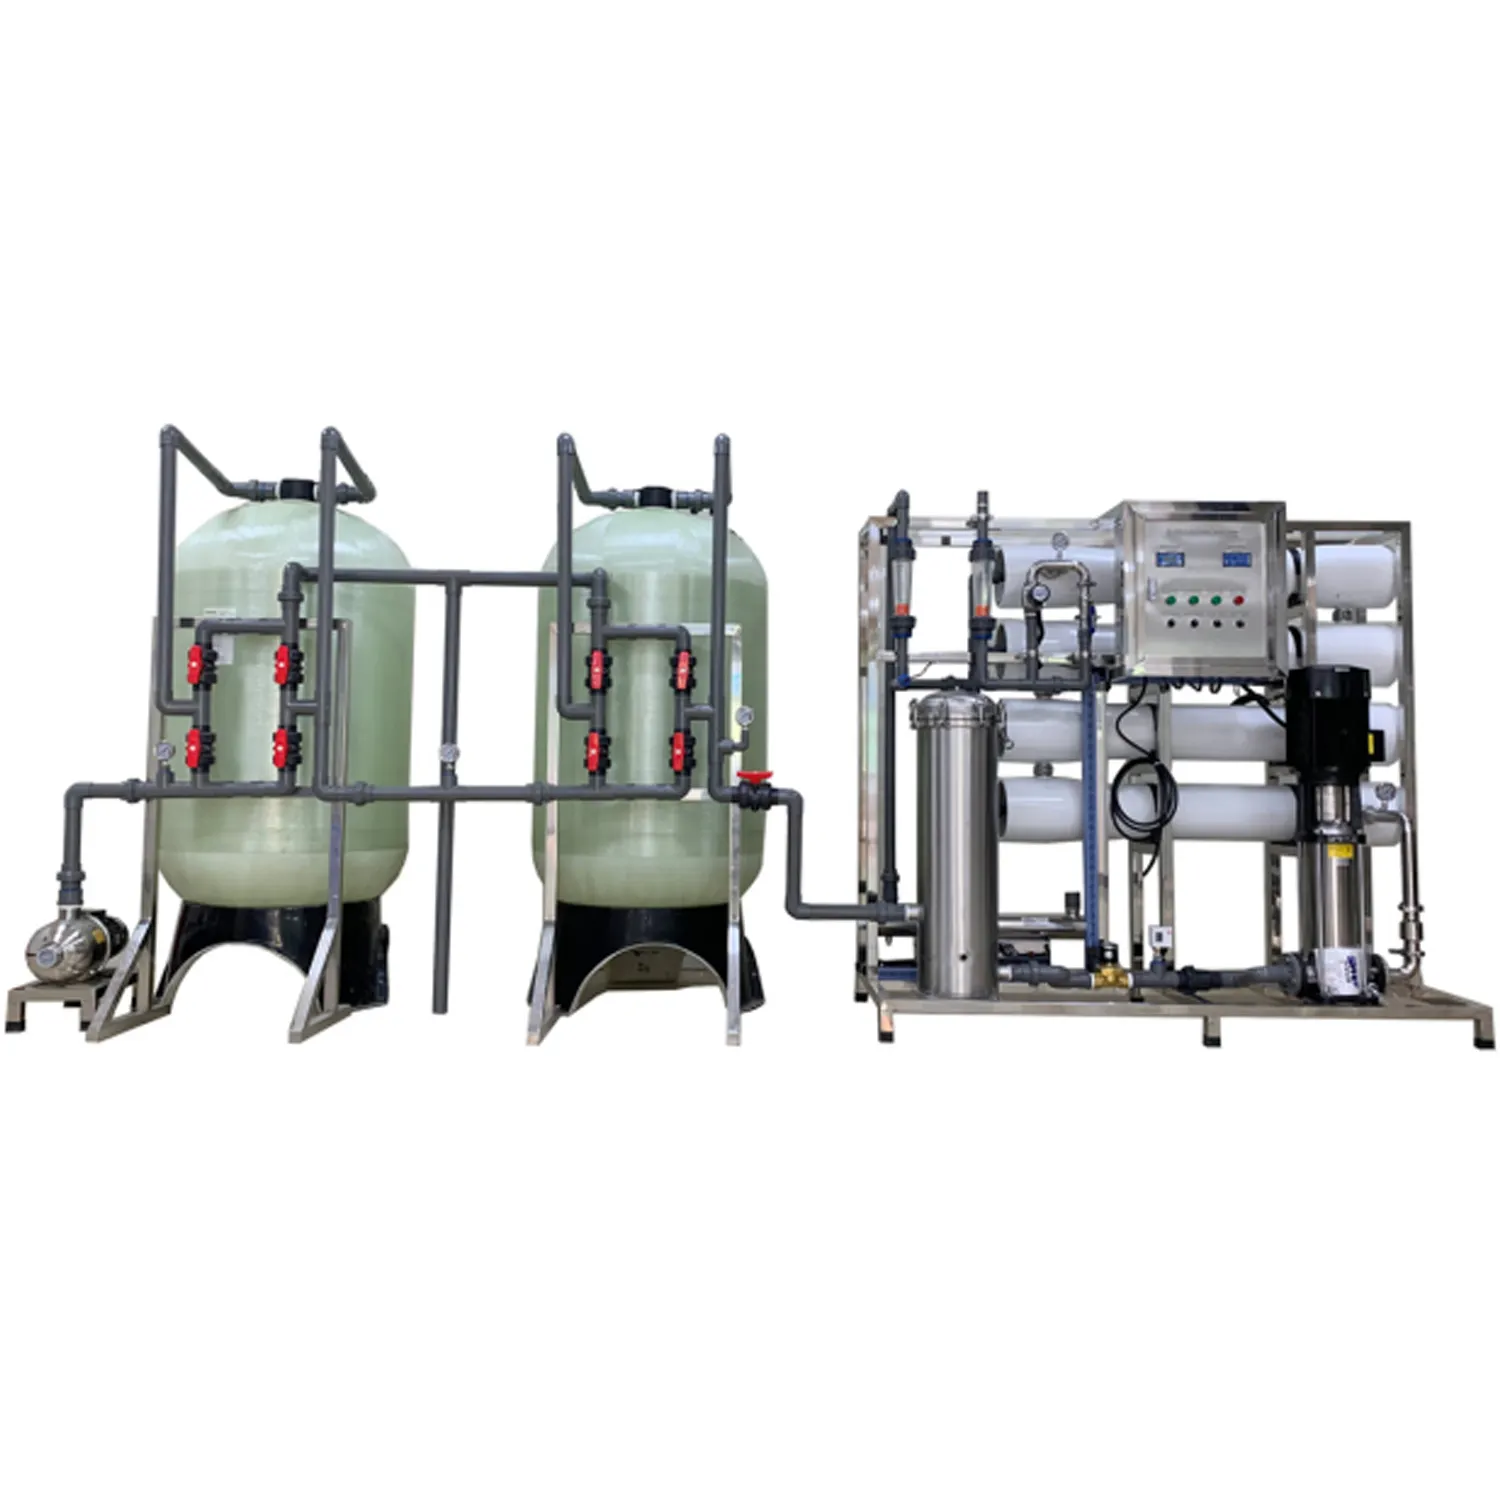 Kommerzielle RO-Wasserbehandlung Desalinationsanlage Filter Umkehrosmose Membraneentfernung Salz zum Trinken